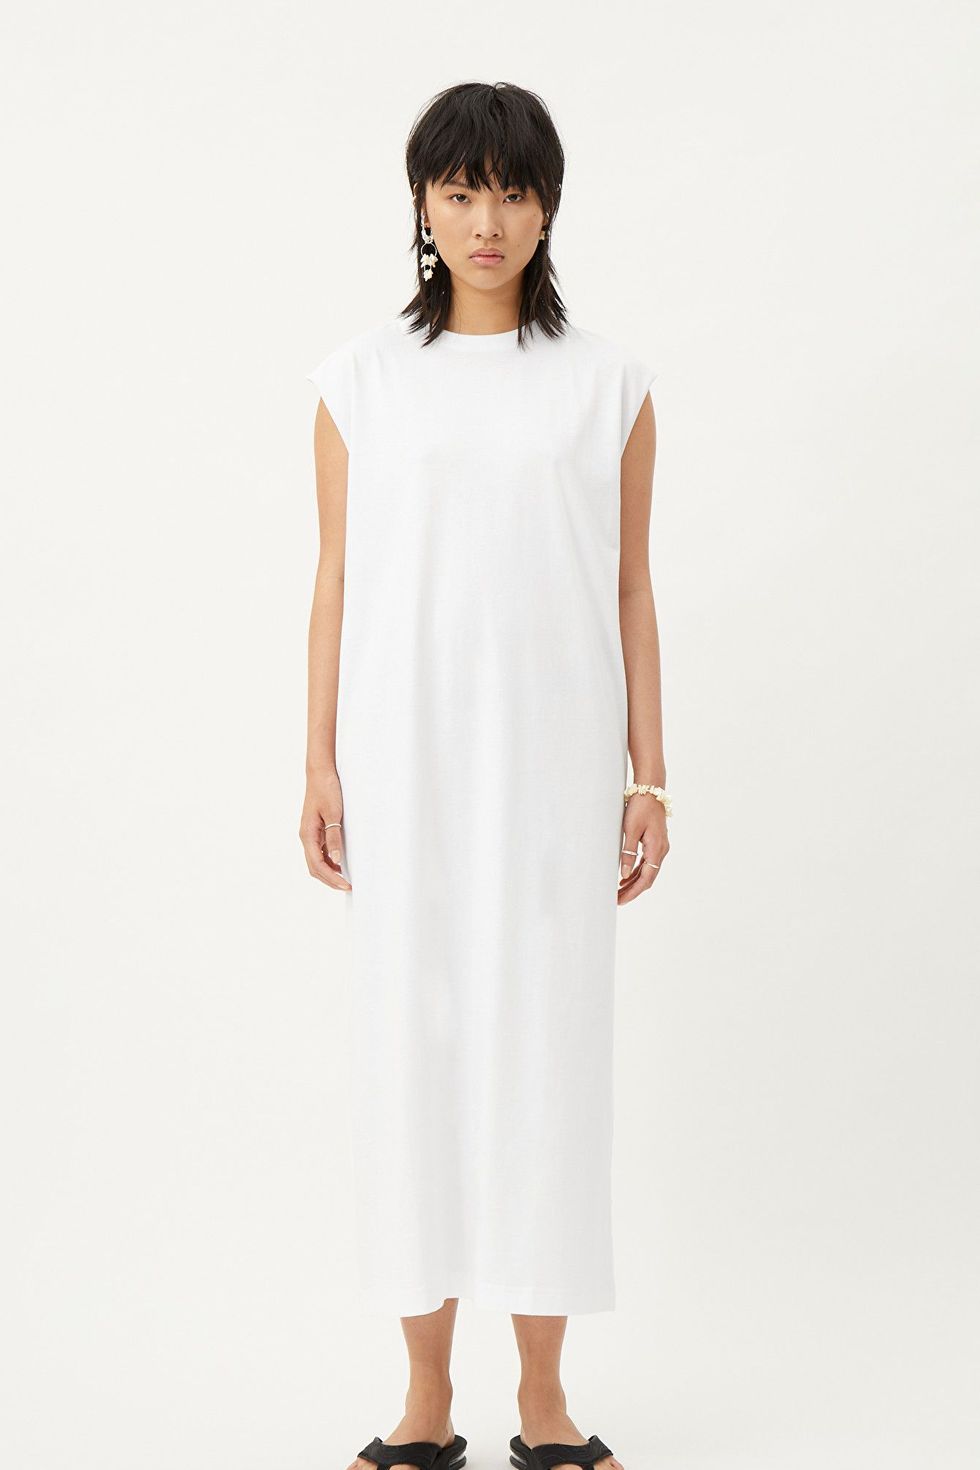 White dresses - 21 best white dresses for summer 2022